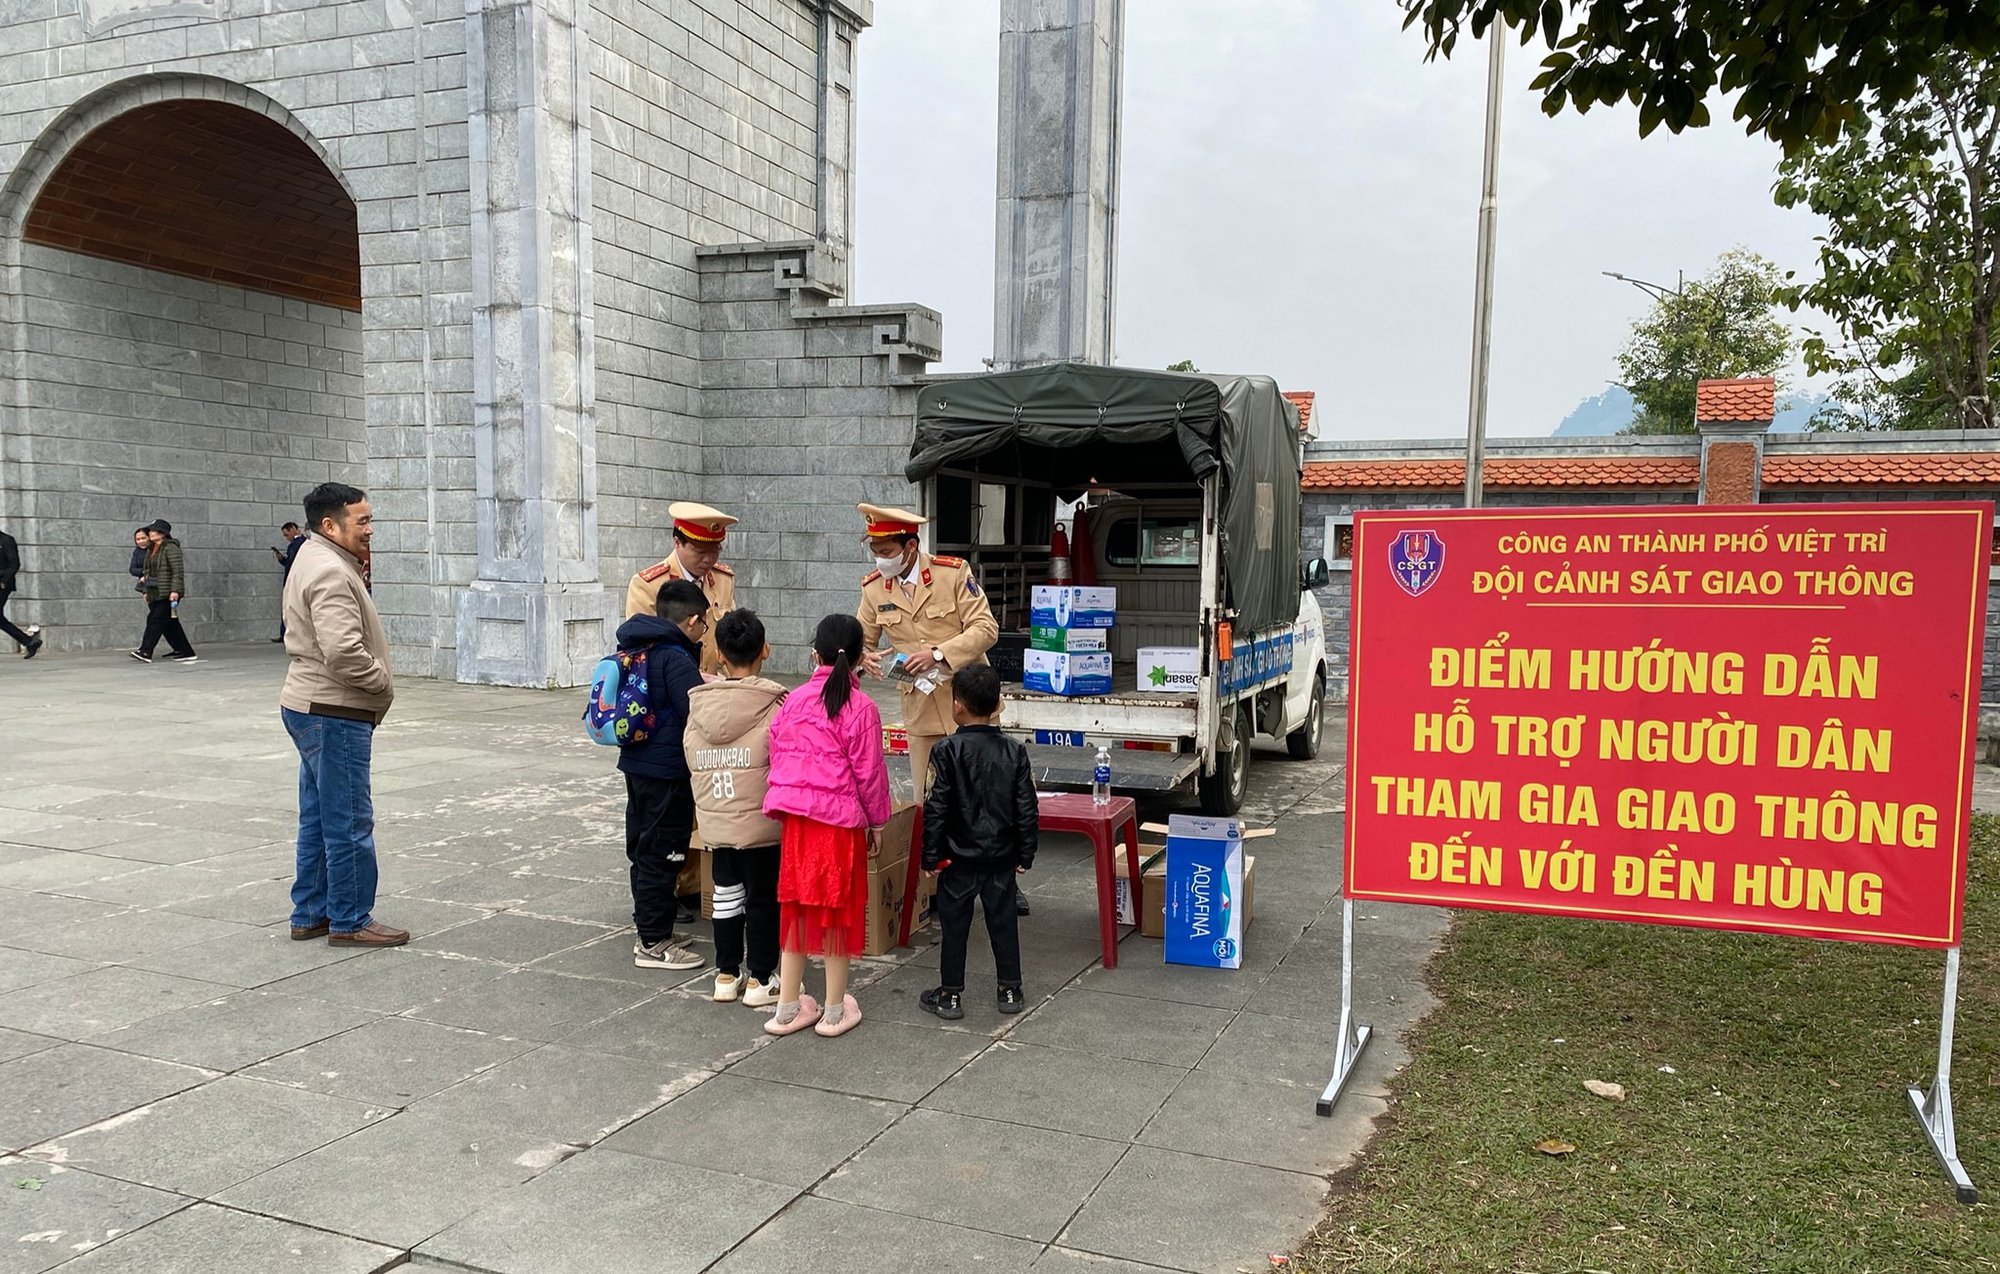 Người dân đến Đền Hùng được Cảnh sát giao thông tặng nước, sữa, bánh mì miễn phí - Ảnh 1.